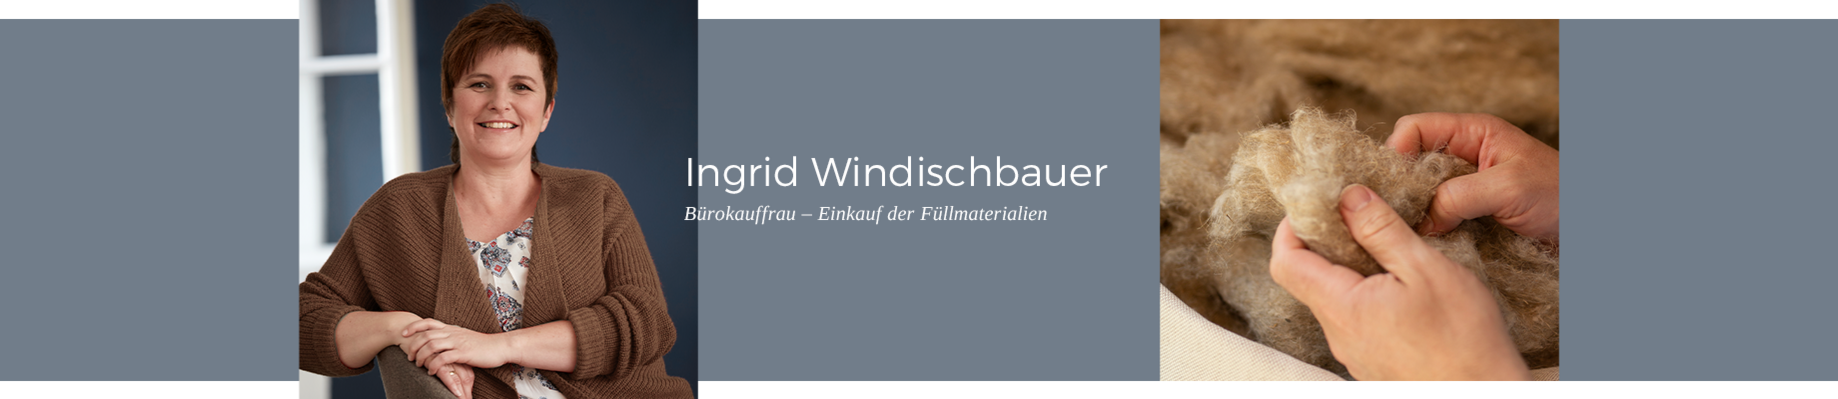 Erfahren Sie mehr über unsere Mitarbeiterin Ingrid Windischbauer, Bürokauffrau - Einkauf der Füllmaterialien